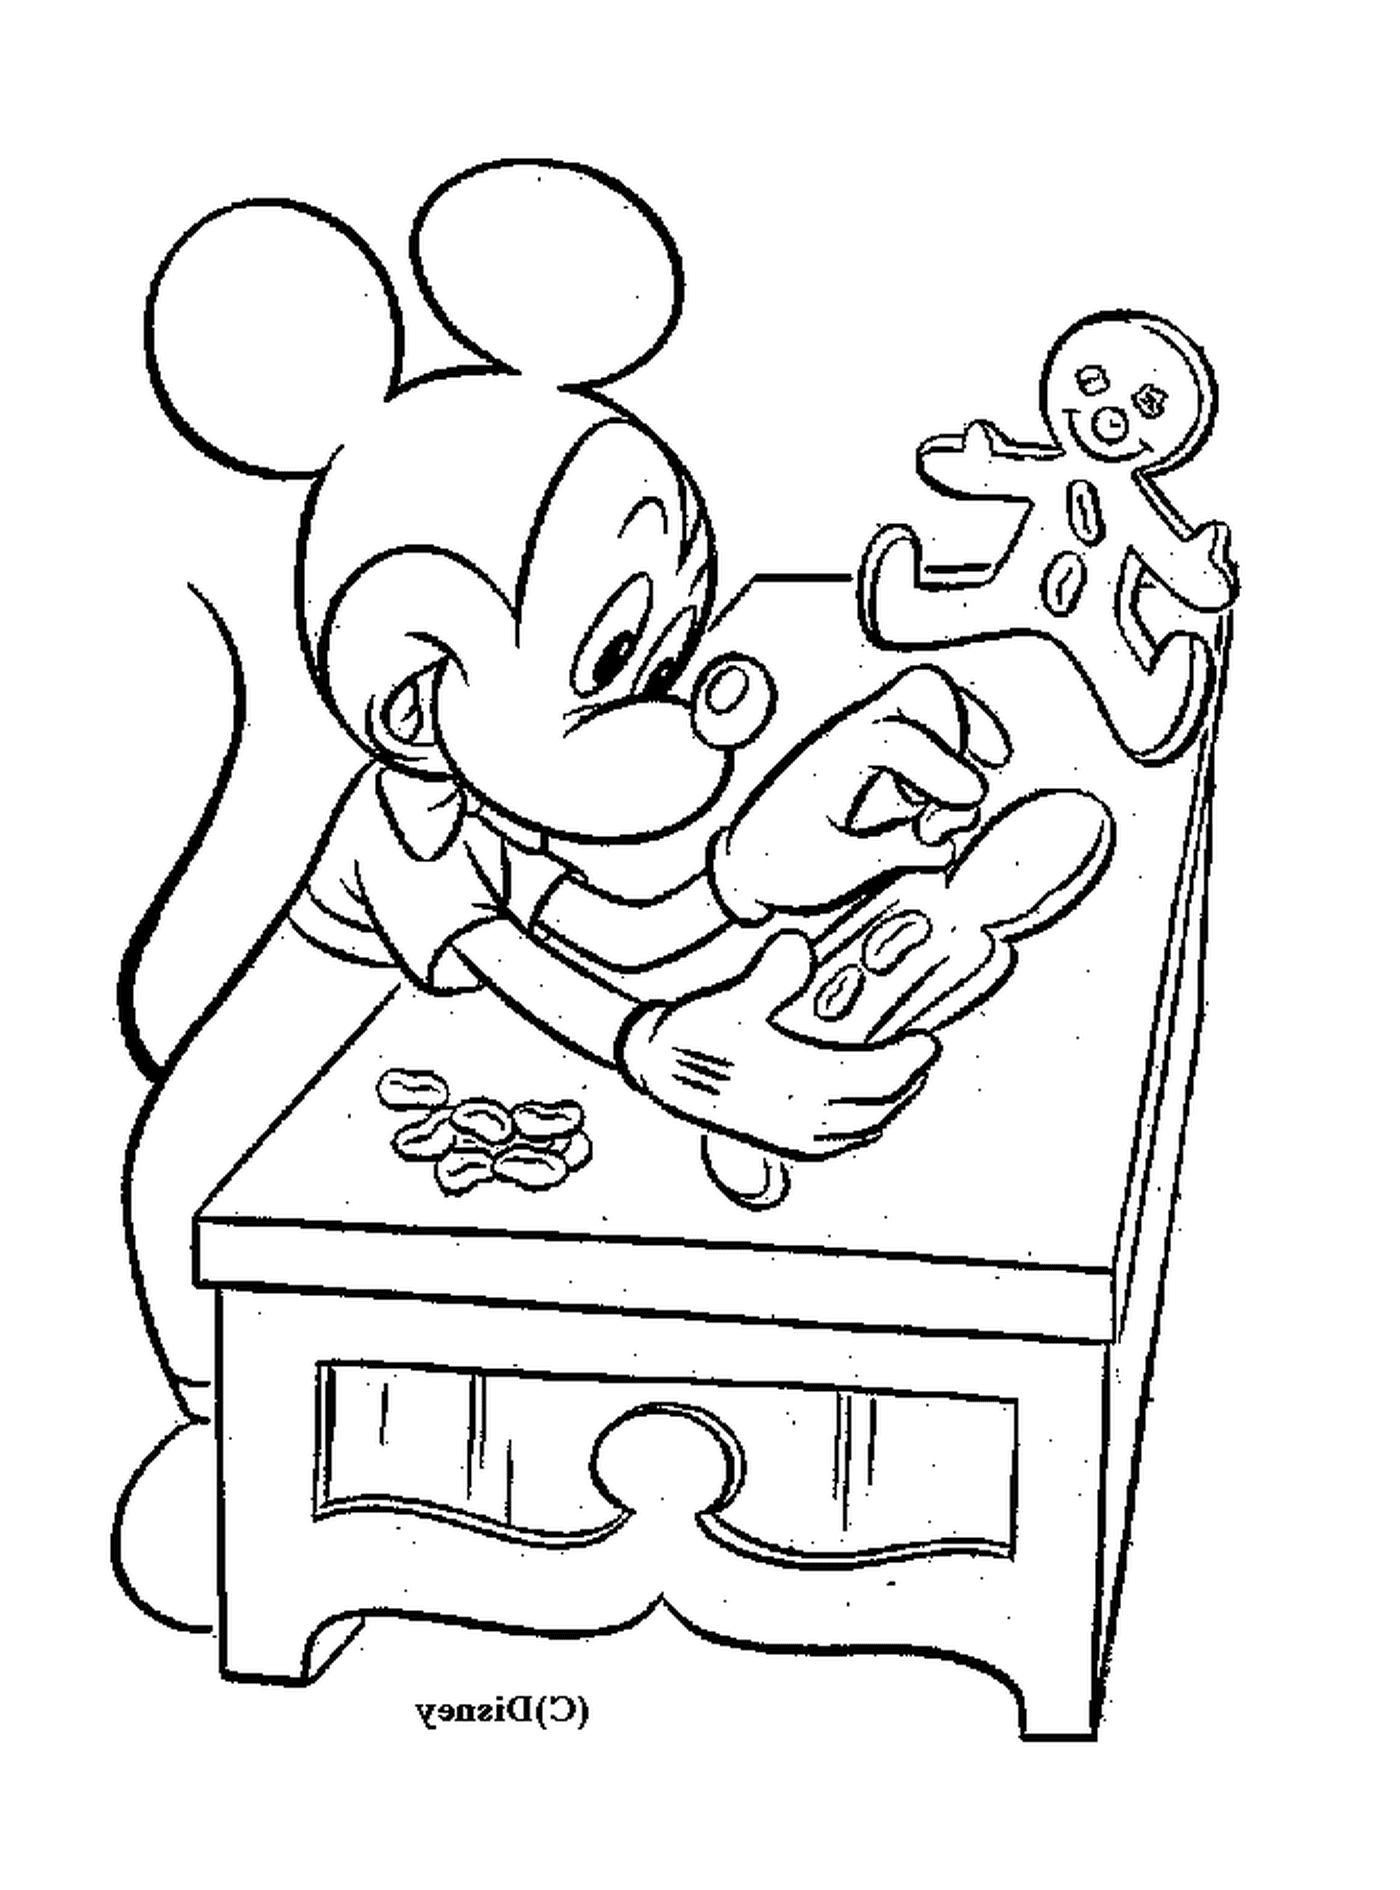  ميكي يصنع الكعك: الجلوس على طاولة مع رجل مصنوع من الزنجبيل 